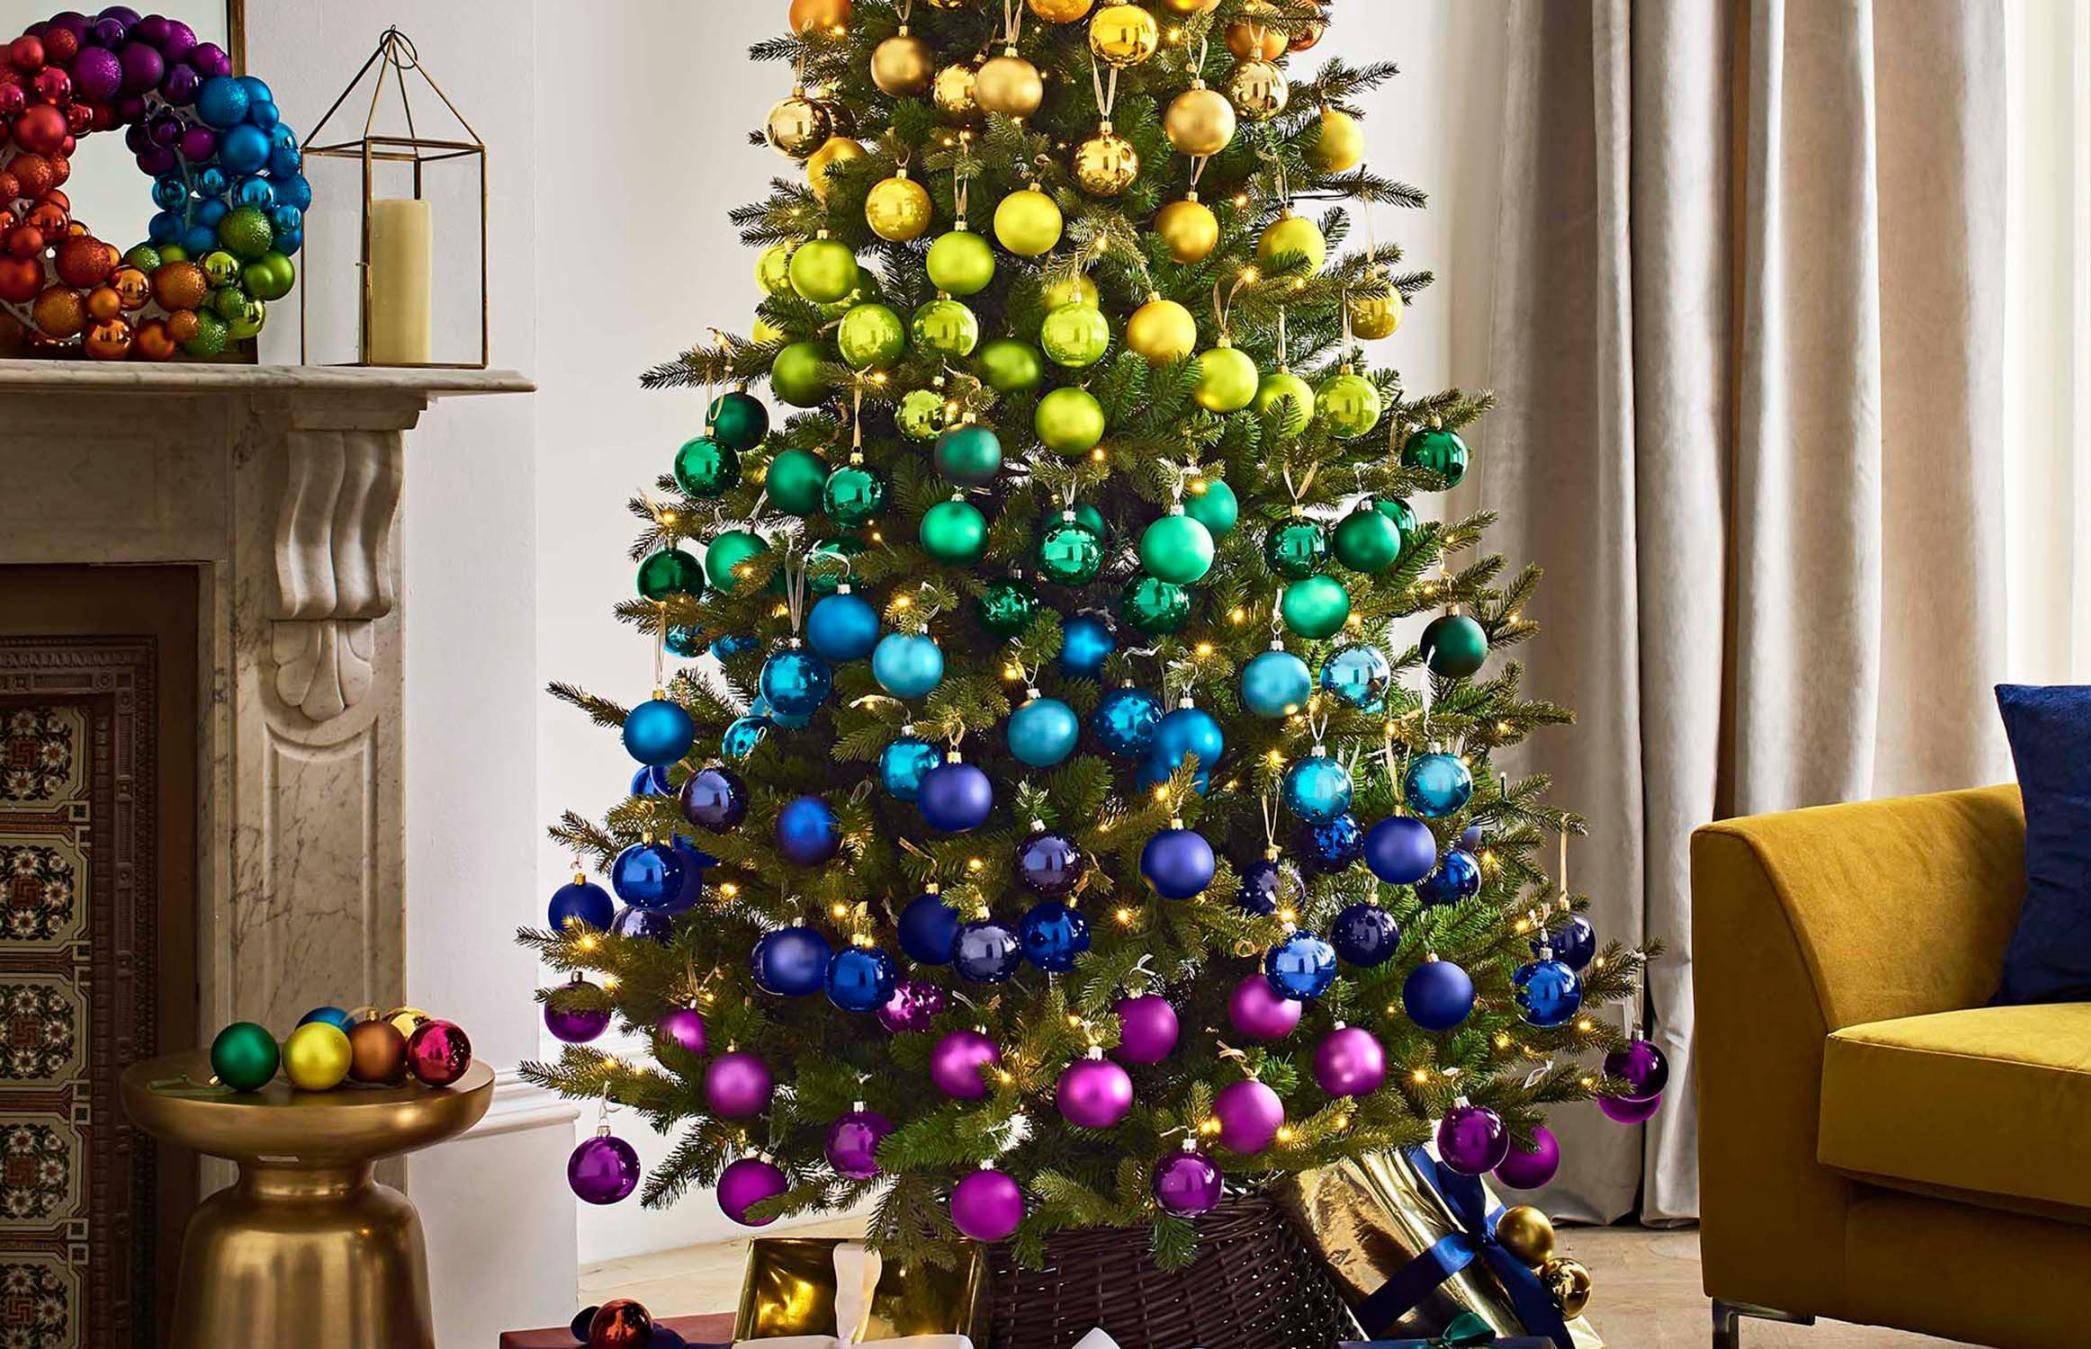 Елки украшенные шарами. Новогодняя елка с разноцветными украшениями. Елка с разноцветными шарами. Однотонное украшение елки. Новогодняя елка с разноцветными игрушками.